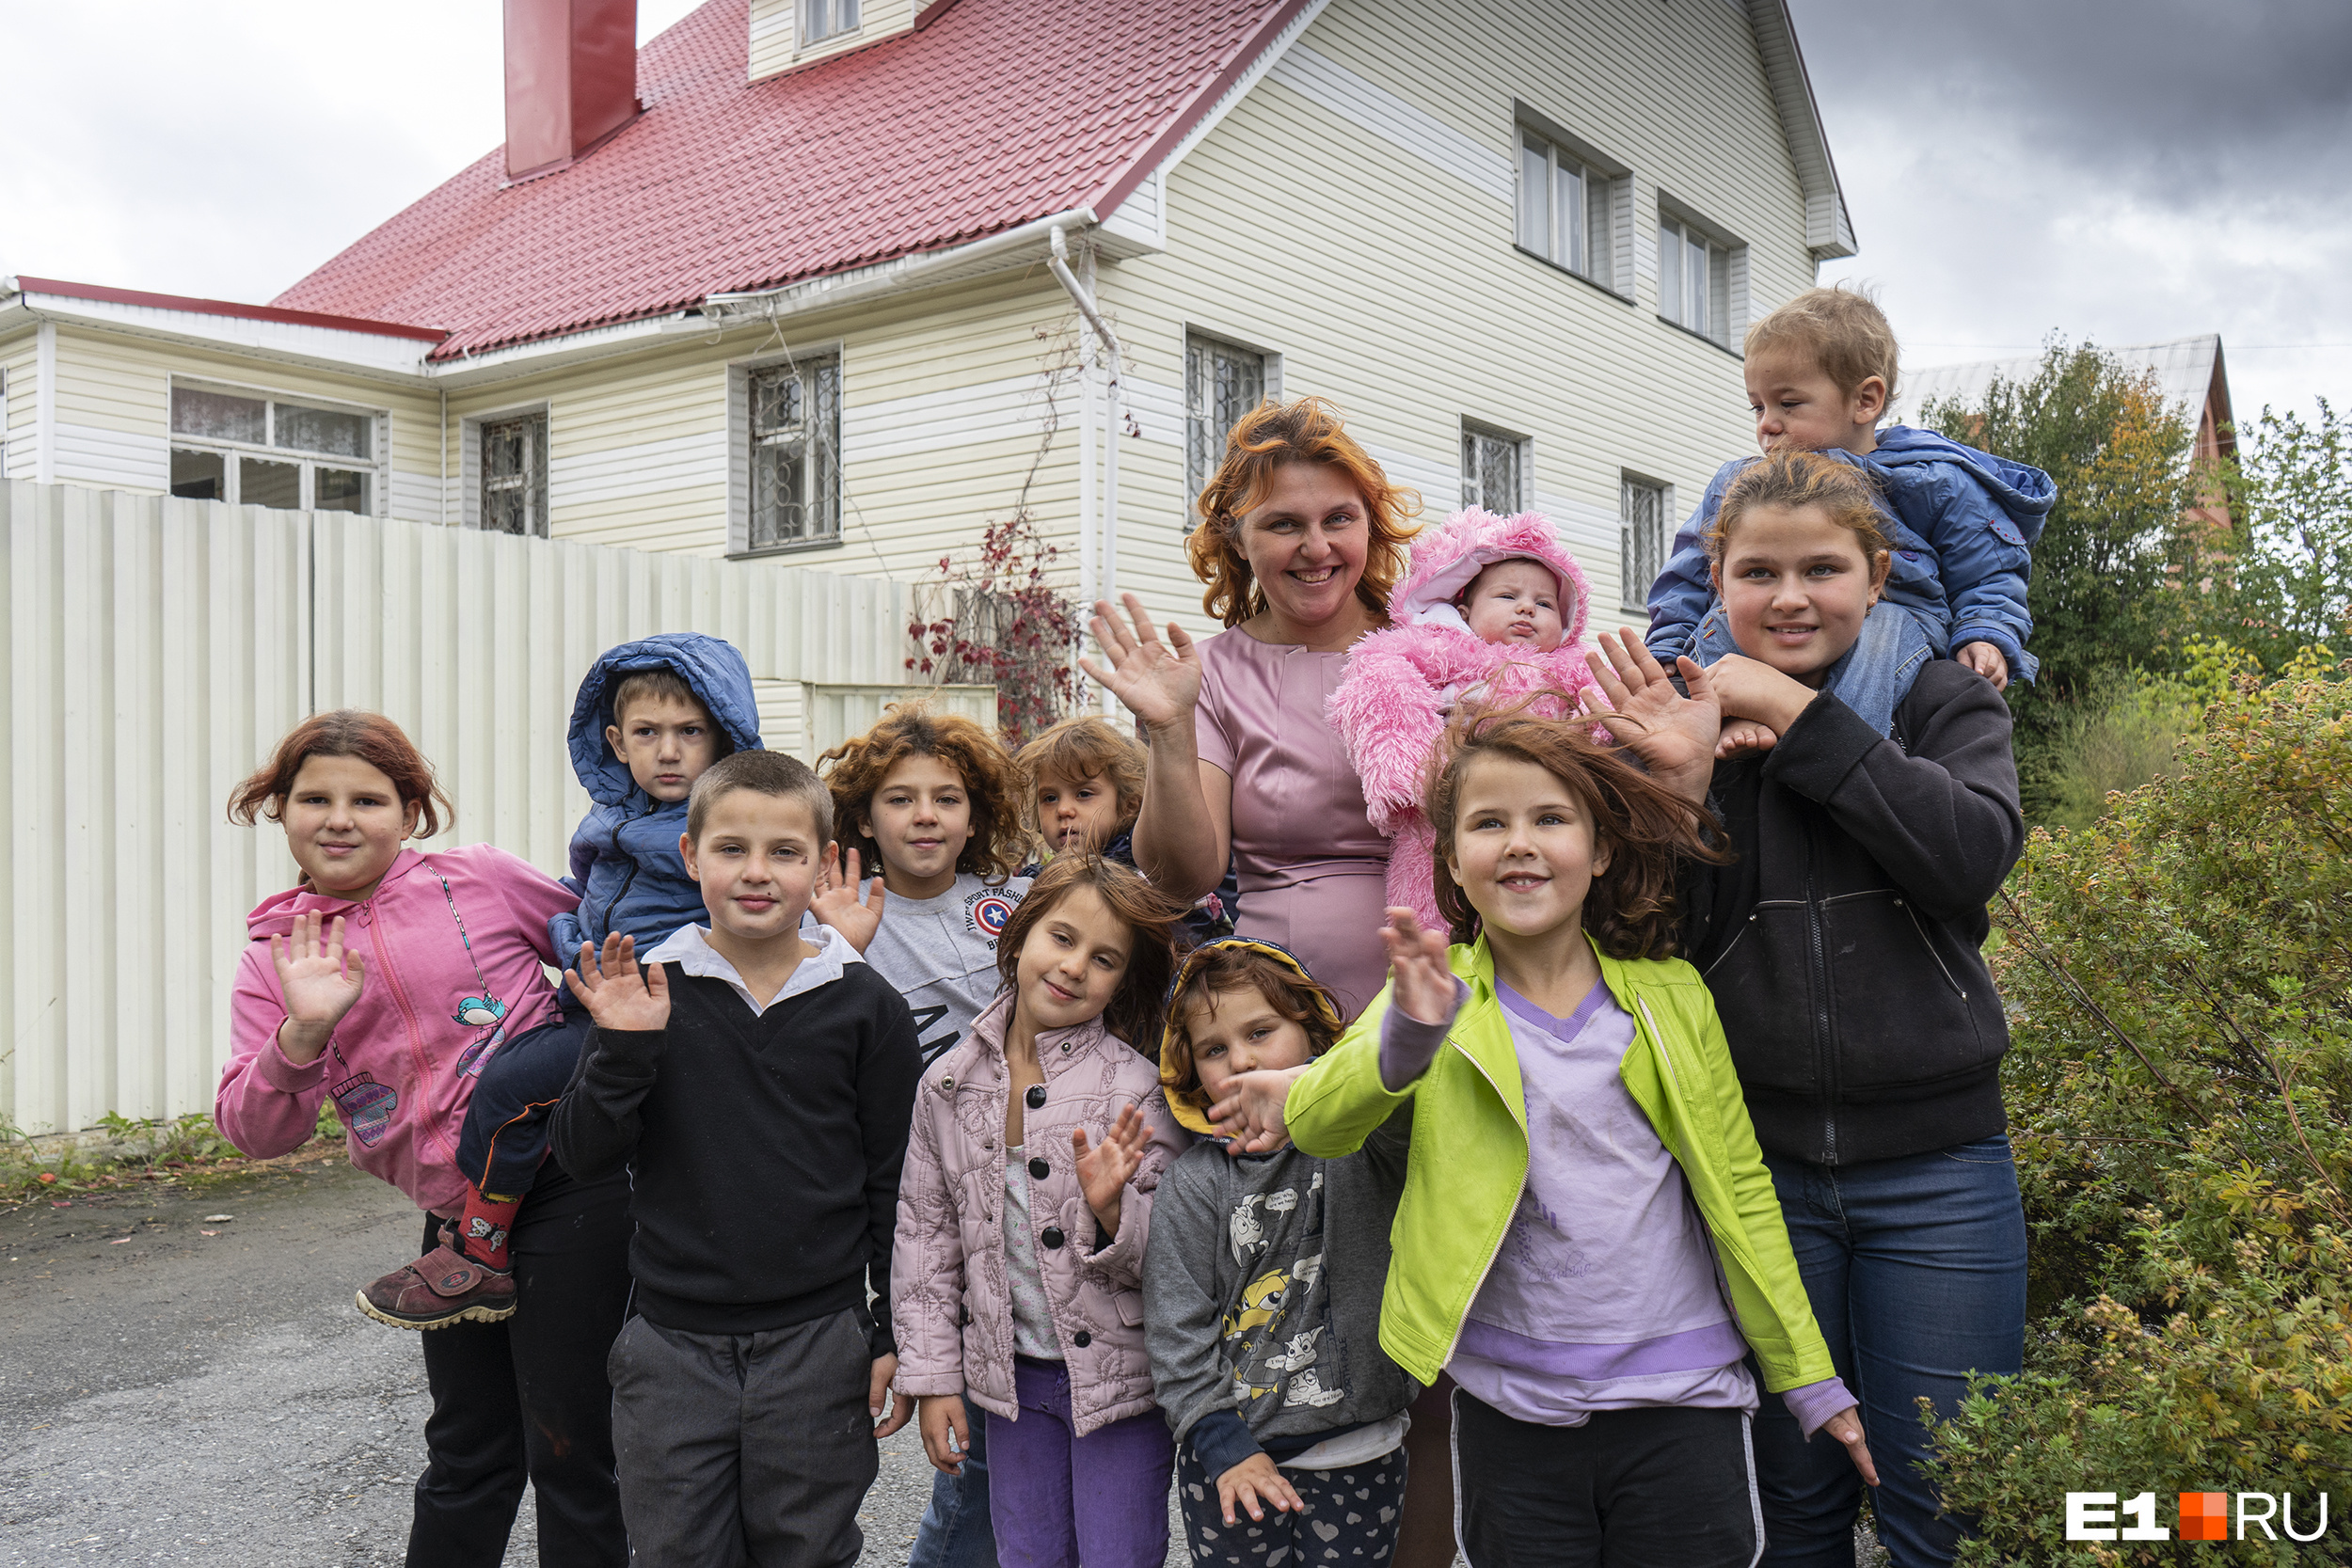 Скандал длиной в семь лет. Уральской семье с 12 детьми, которой меценат подарил дом, дали землю в Тугулыме